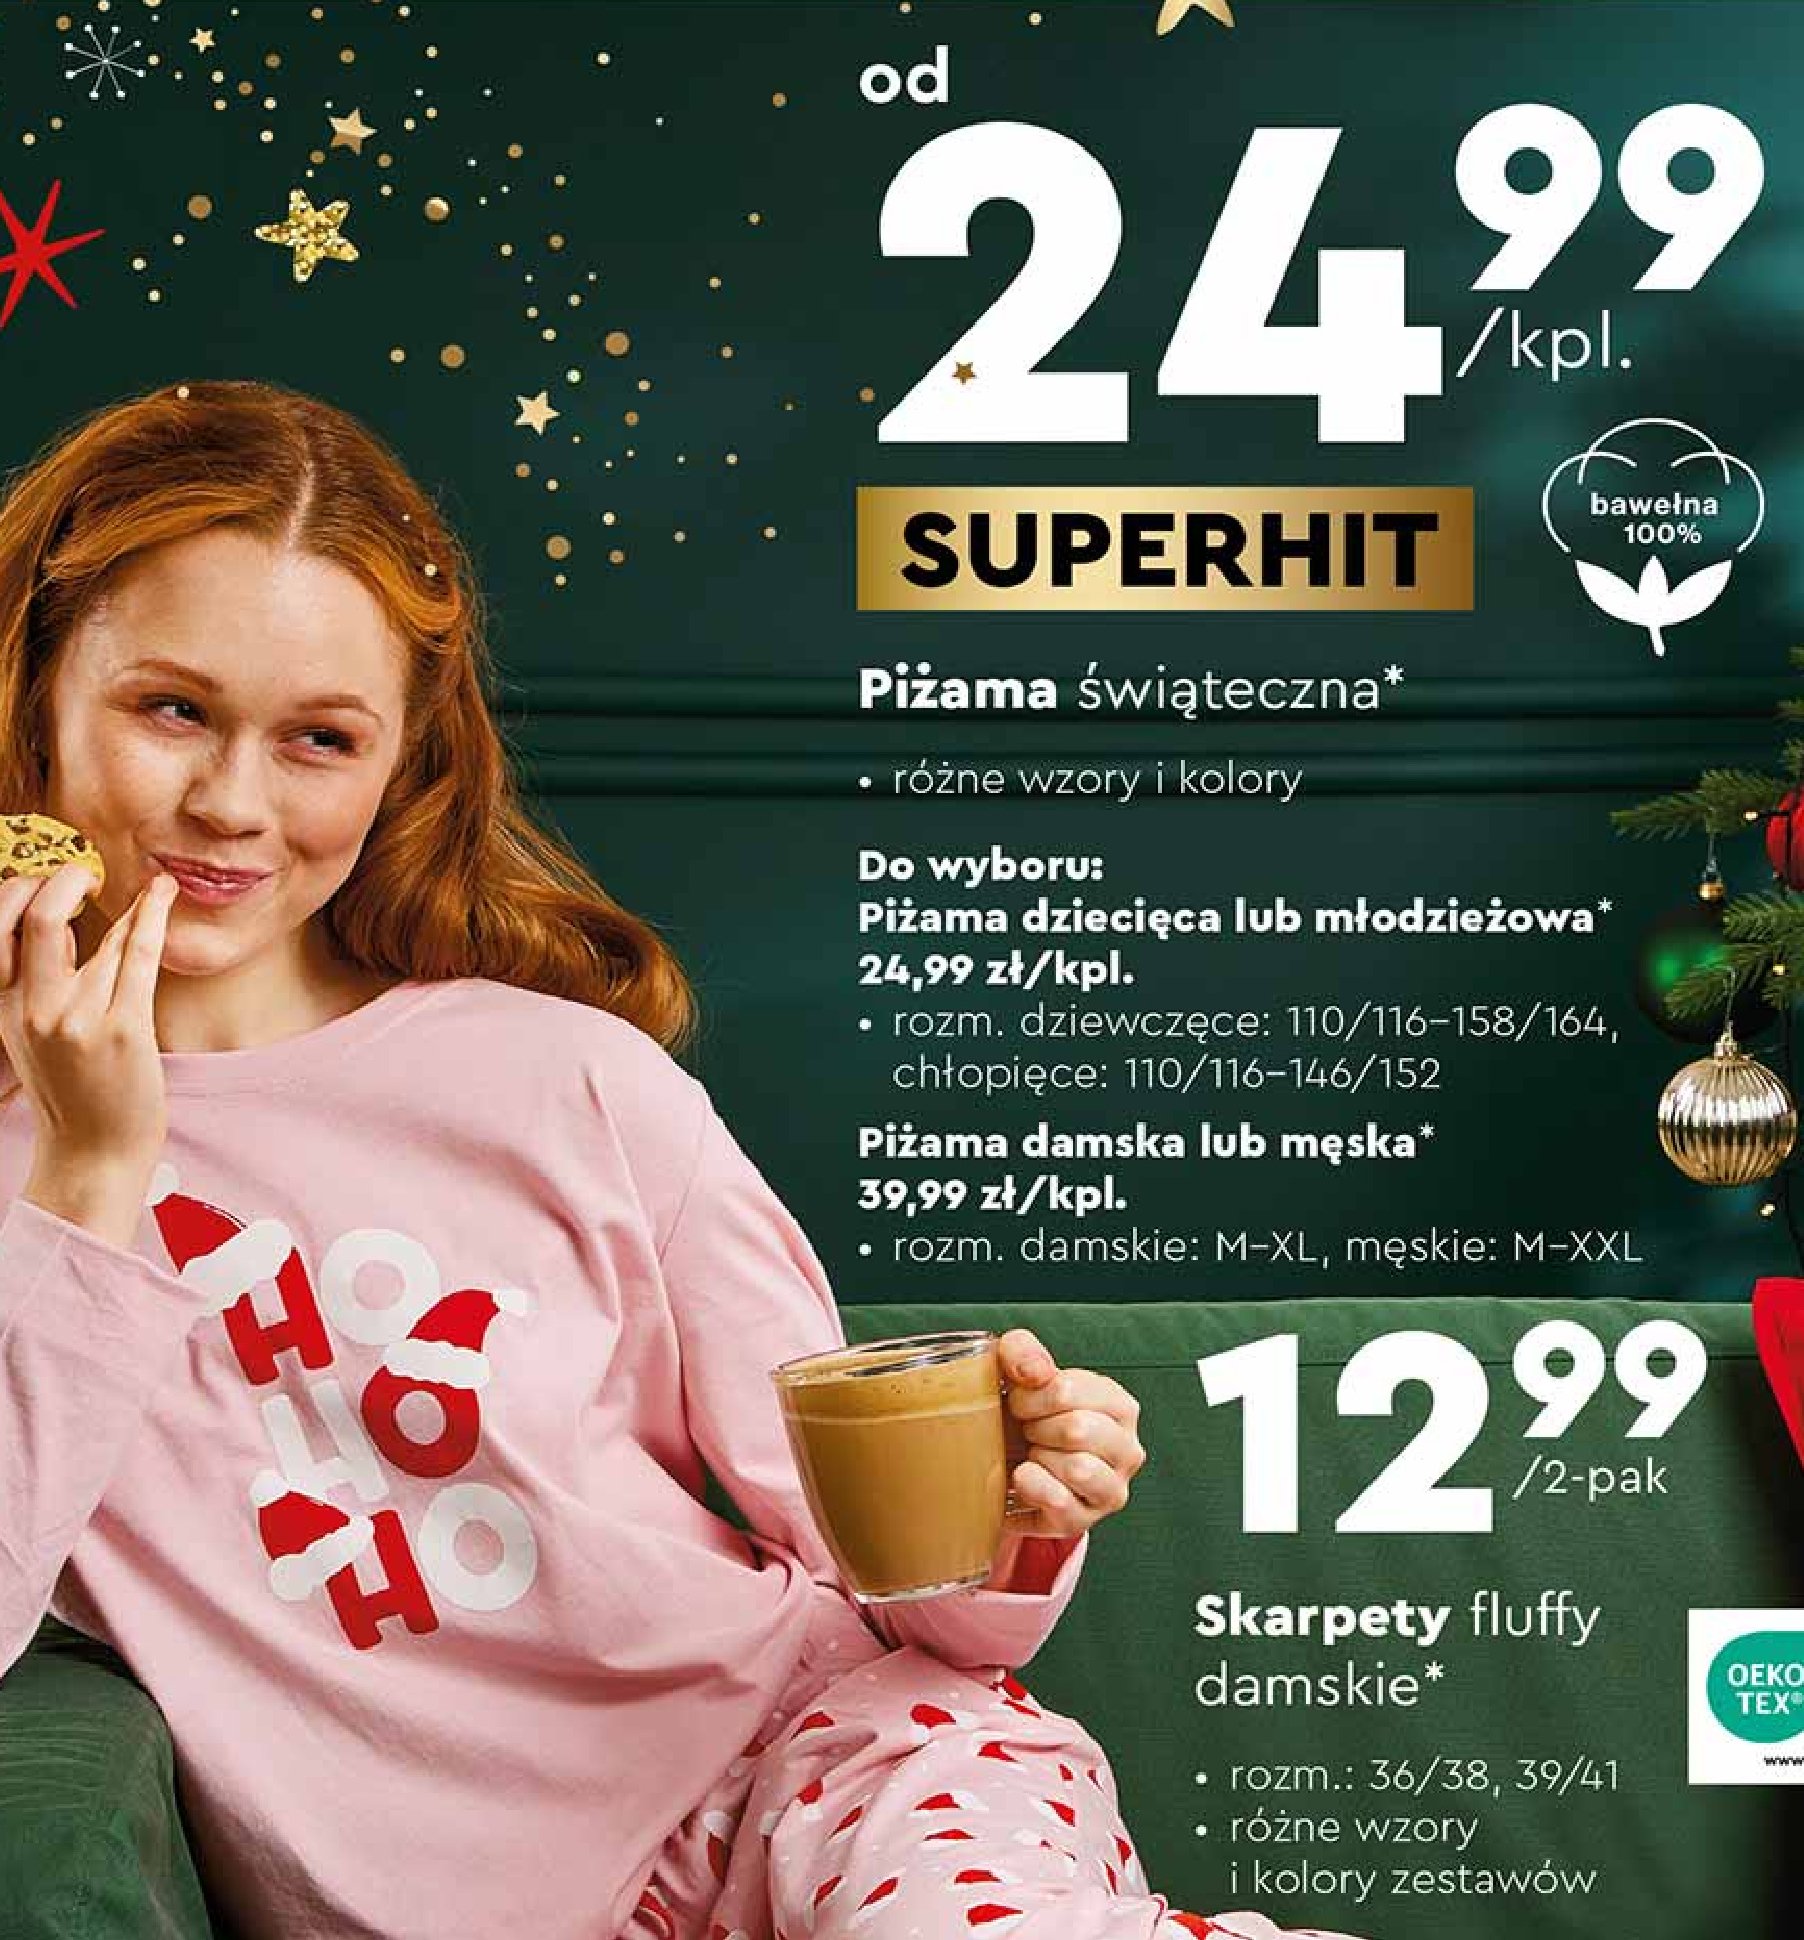 Piżama dziewczęca świąteczna promocja